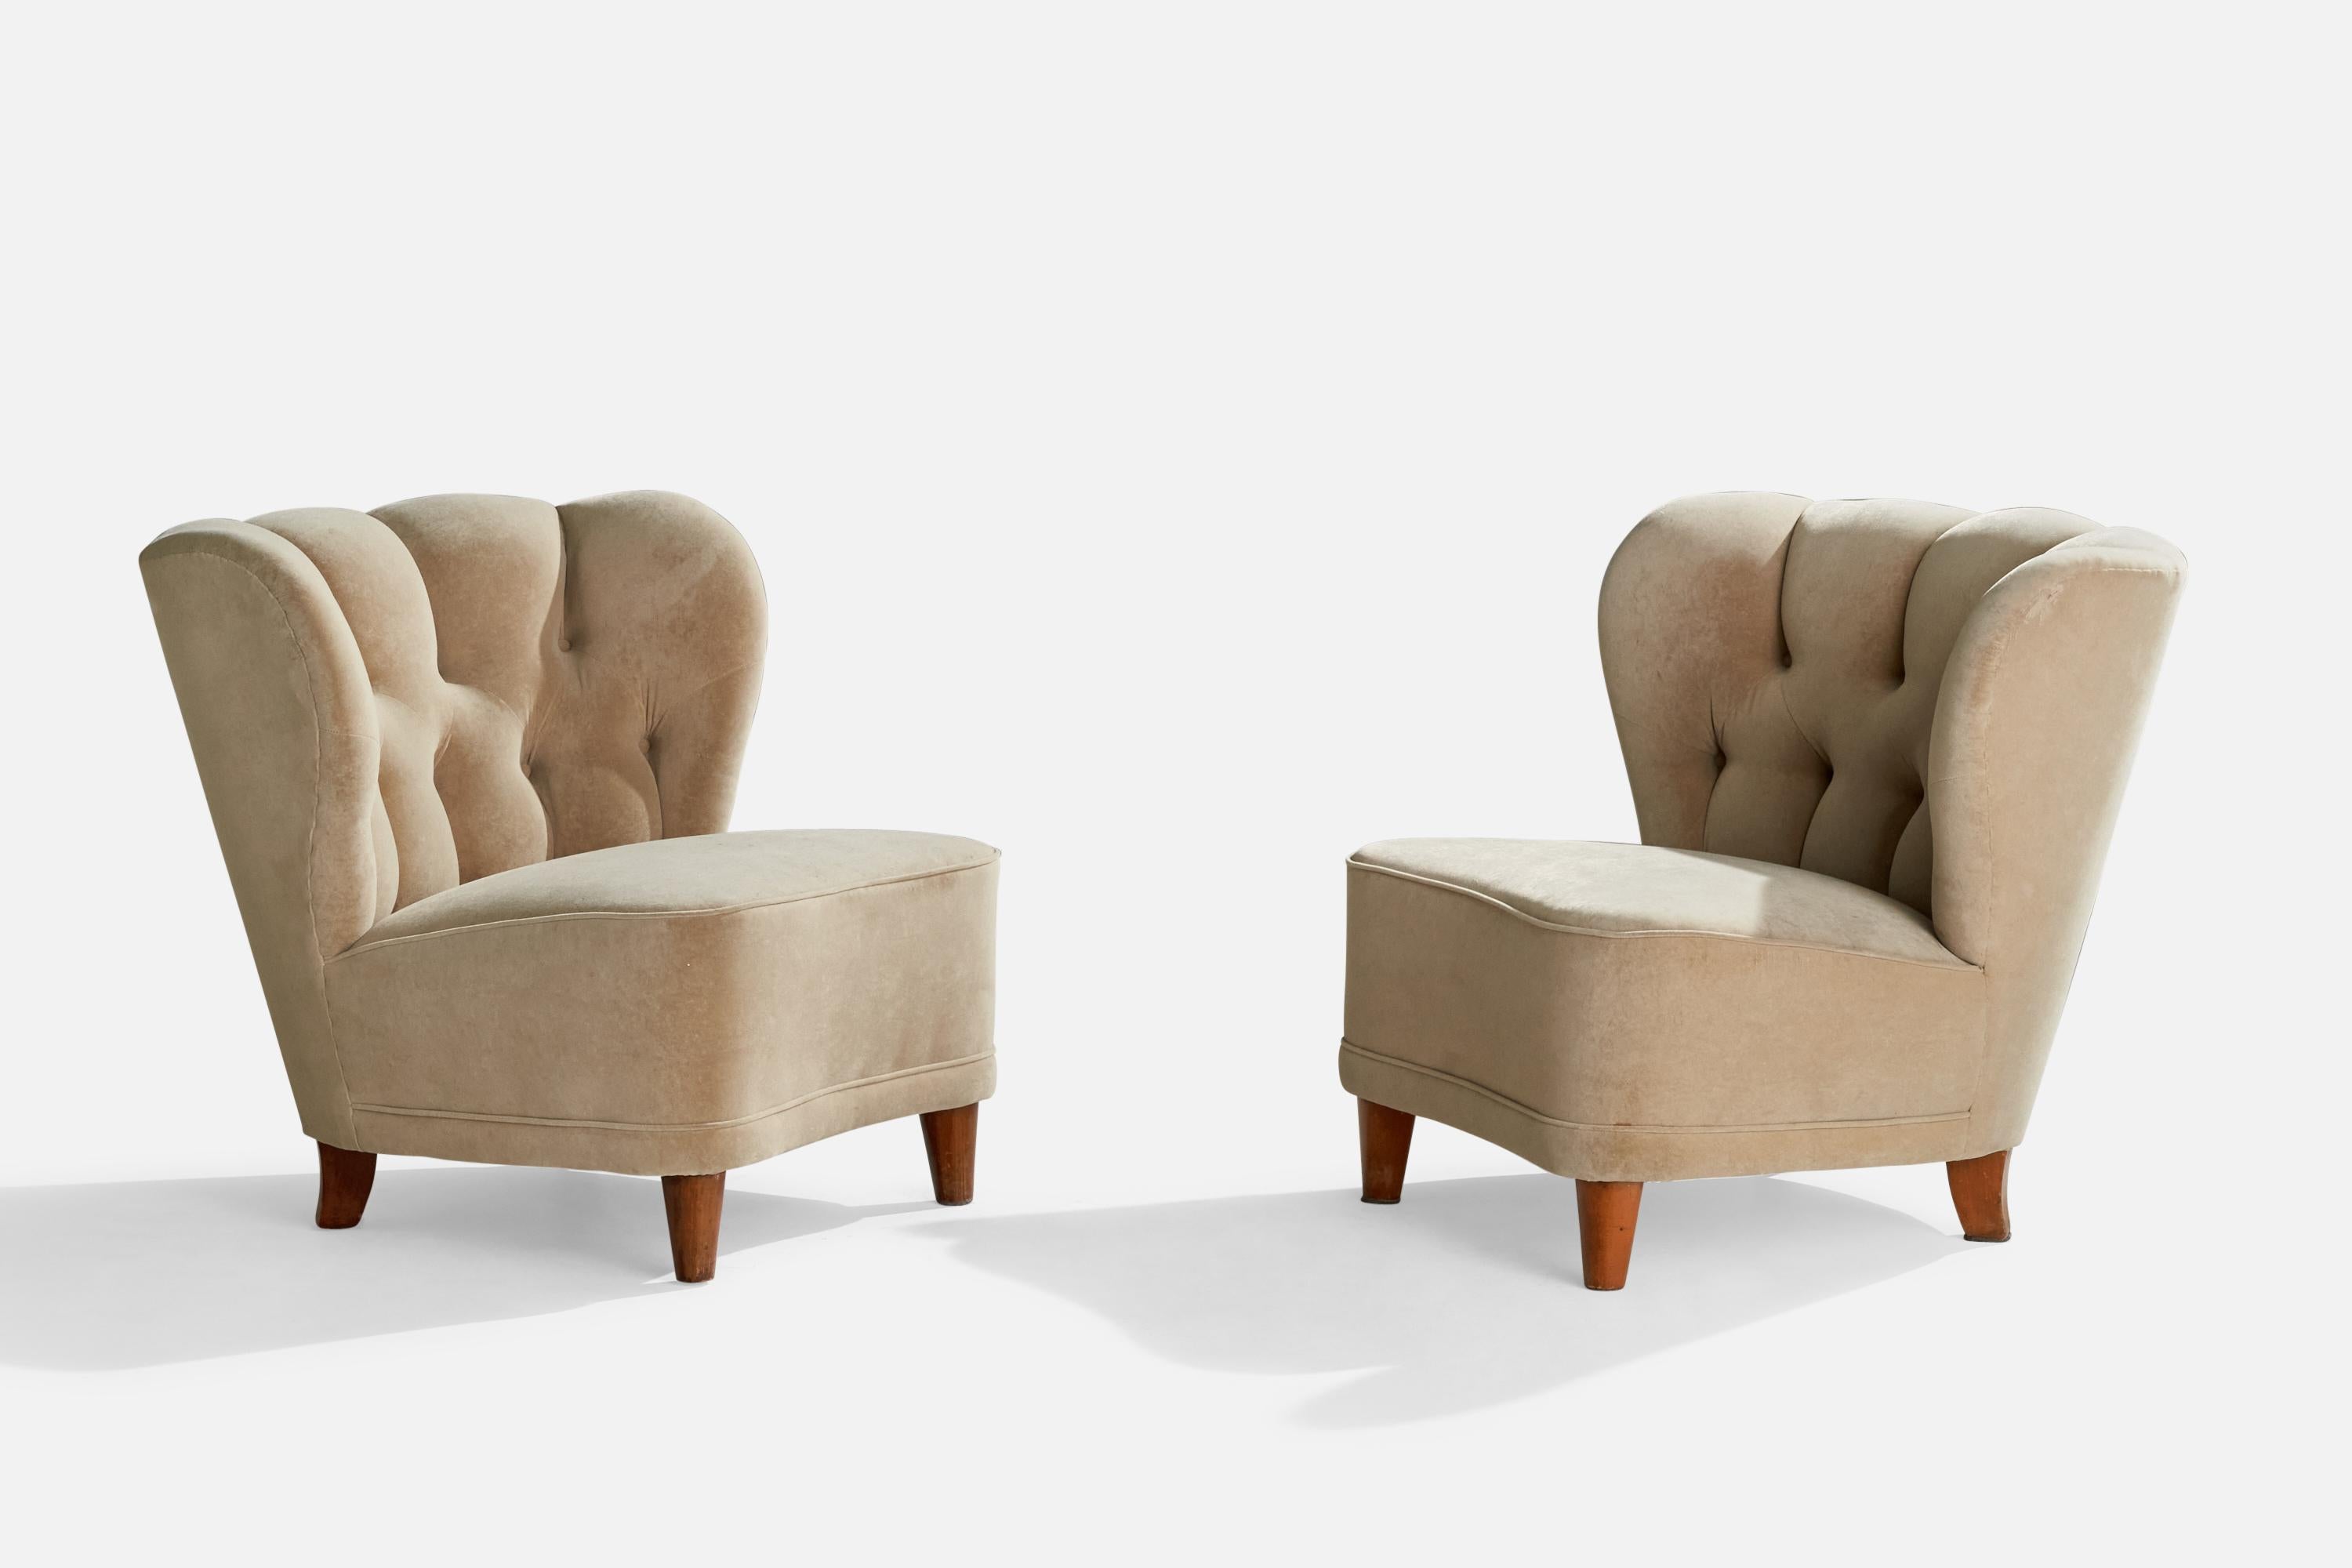 Paire de chaises longues en bois et tissu beige clair, conçues et produites en Finlande dans les années 1940.

Hauteur d'assise 15